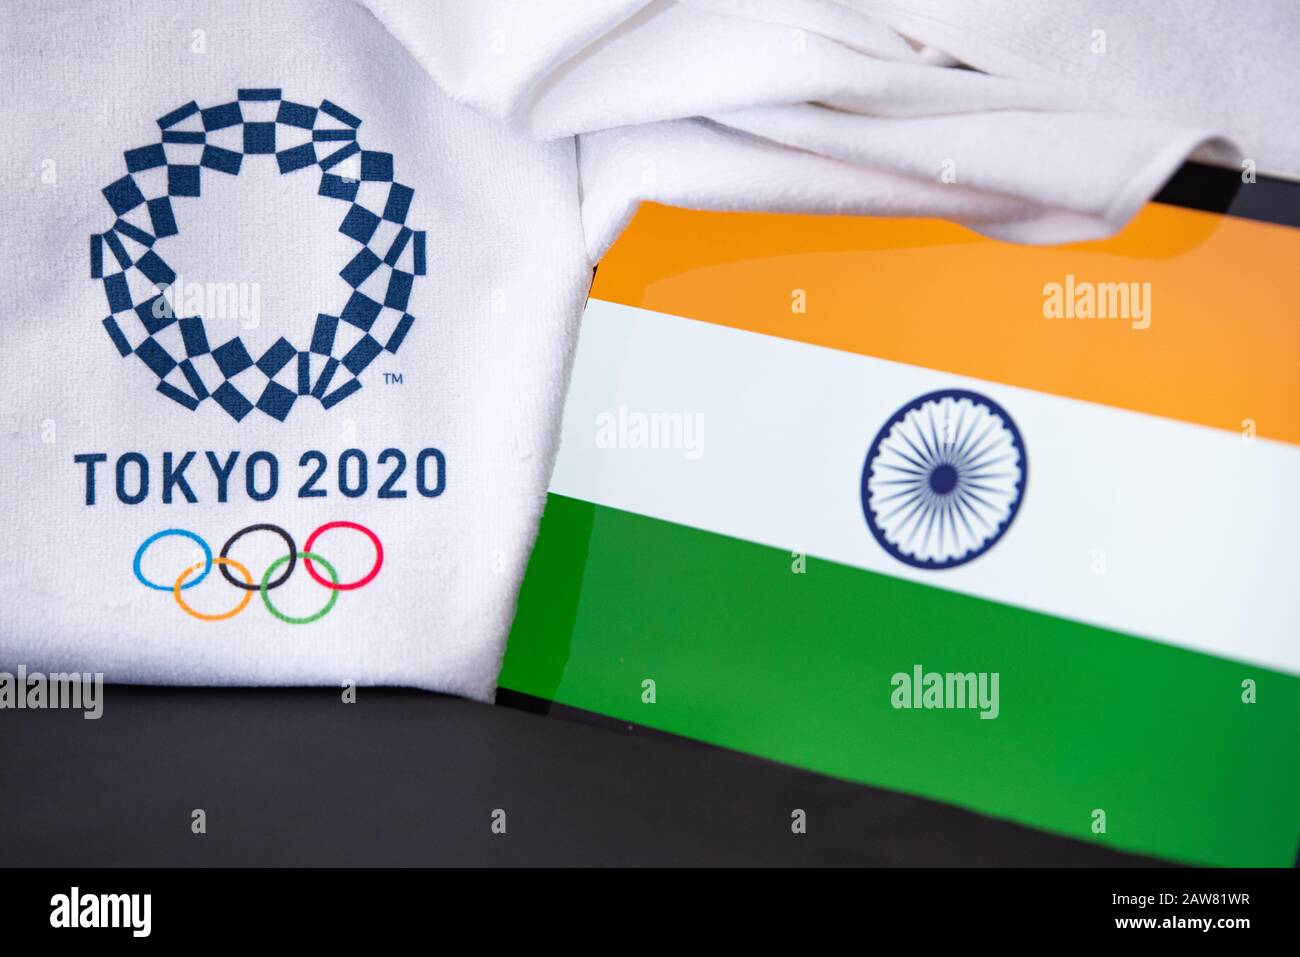 Đội tuyển Olympic Mùa hè Ấn Độ được trang bị sức mạnh, khả năng và tinh thần chiến đấu để hành quân đến các giải đấu lớn nhất của thế giới. Cùng xem những tay vợt, cầu thủ tài năng của quốc gia này thi đấu tại các môn thể thao khác nhau và cổ vũ cho họ trên đường đến những chiến thắng lịch sử.